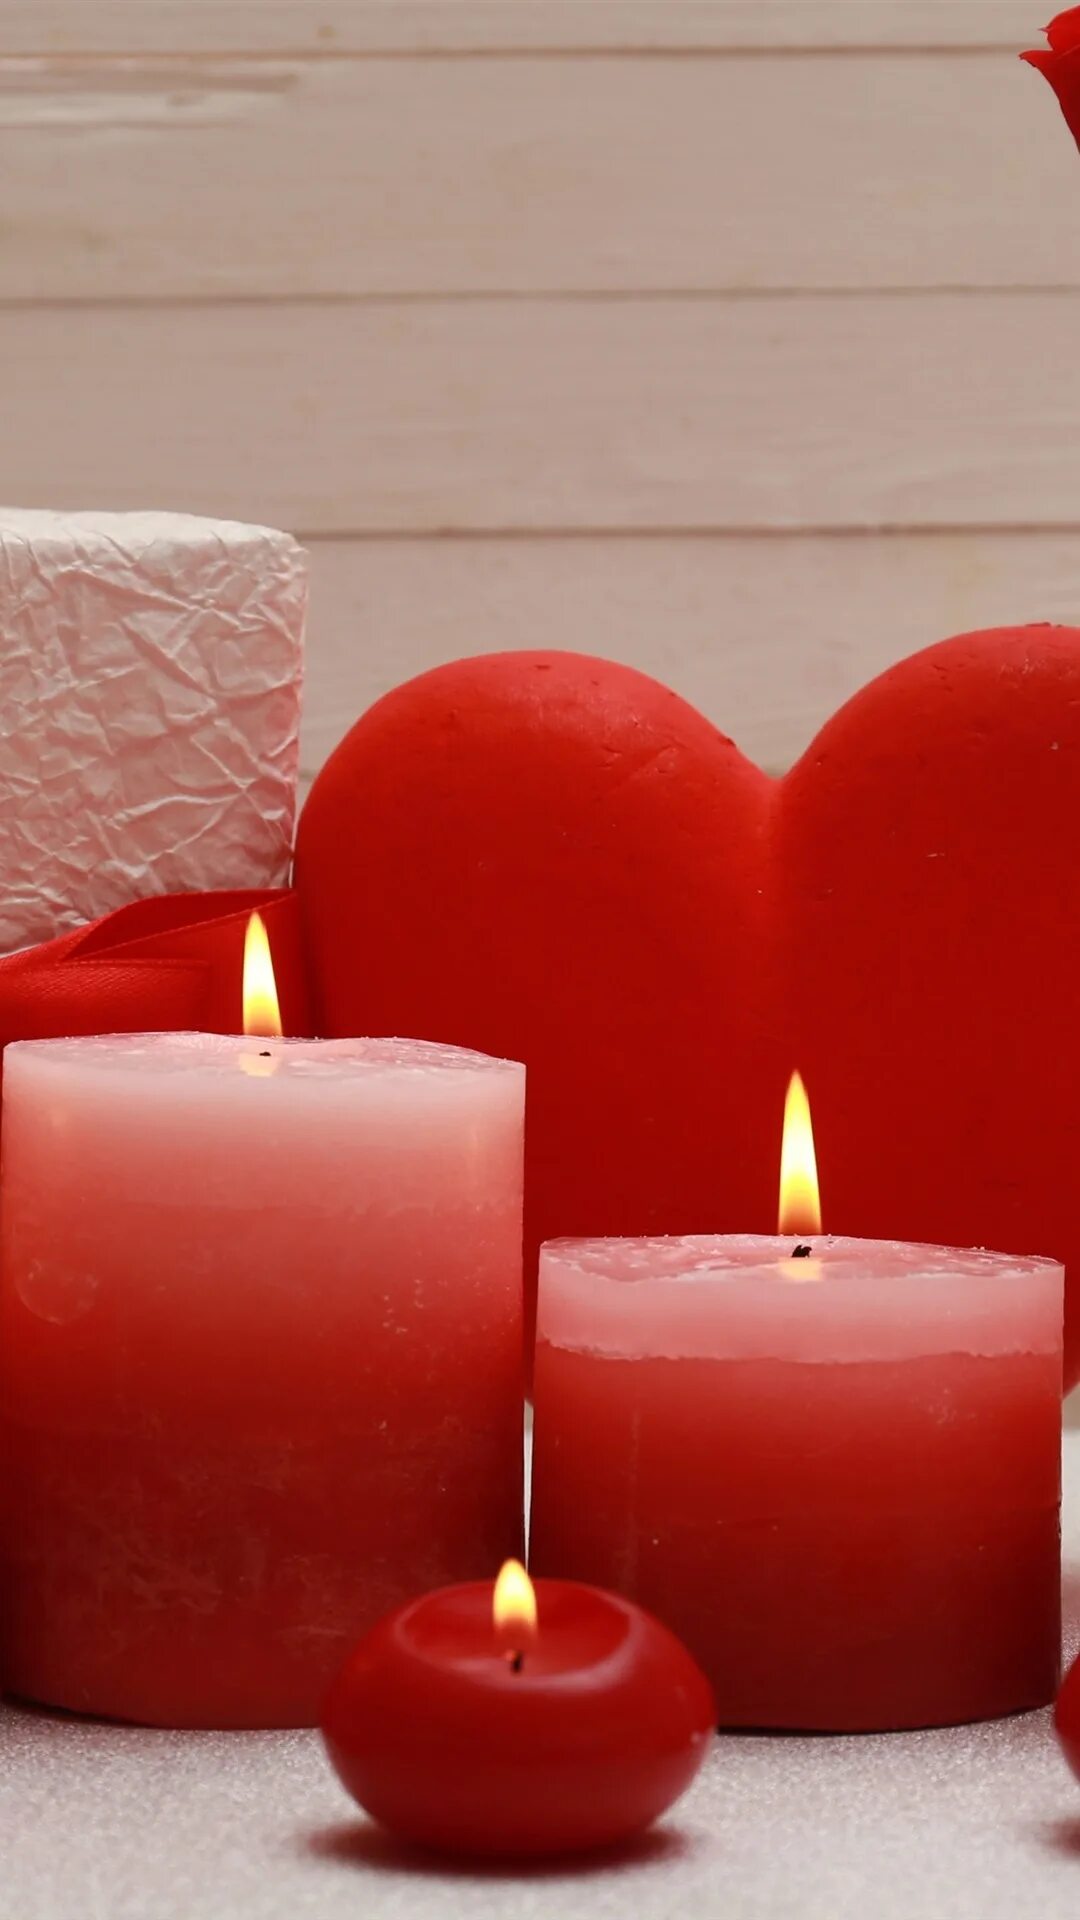 Красная свеча. Красивые свечи. Свечи сердечки. Красивые красные свечи. Красные свечи хорошие